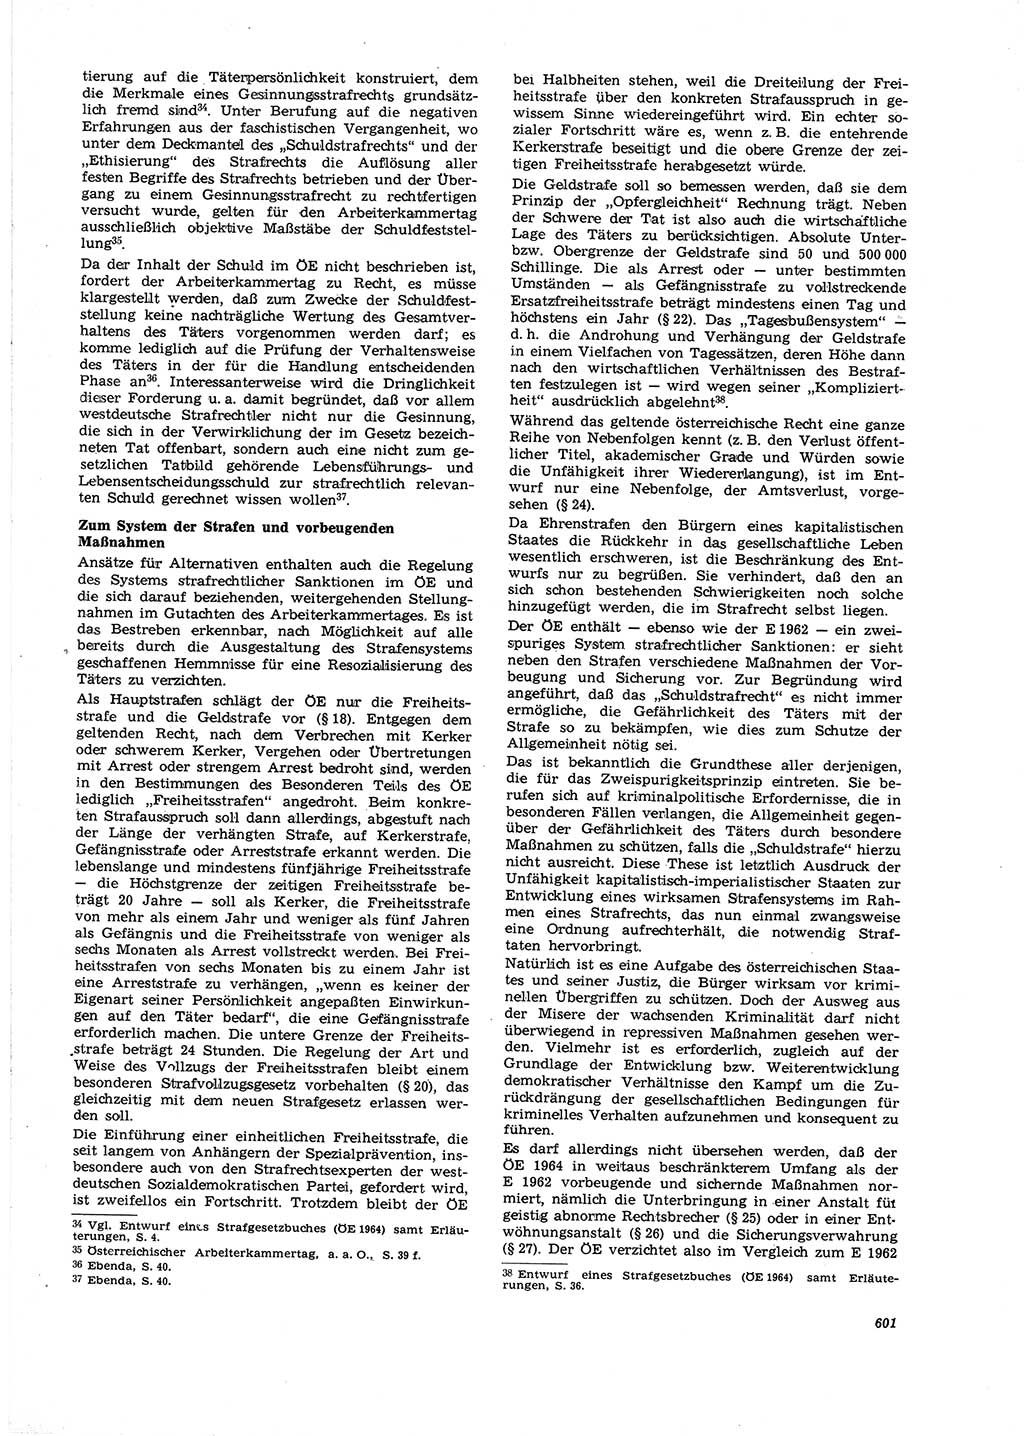 Neue Justiz (NJ), Zeitschrift für Recht und Rechtswissenschaft [Deutsche Demokratische Republik (DDR)], 21. Jahrgang 1967, Seite 601 (NJ DDR 1967, S. 601)